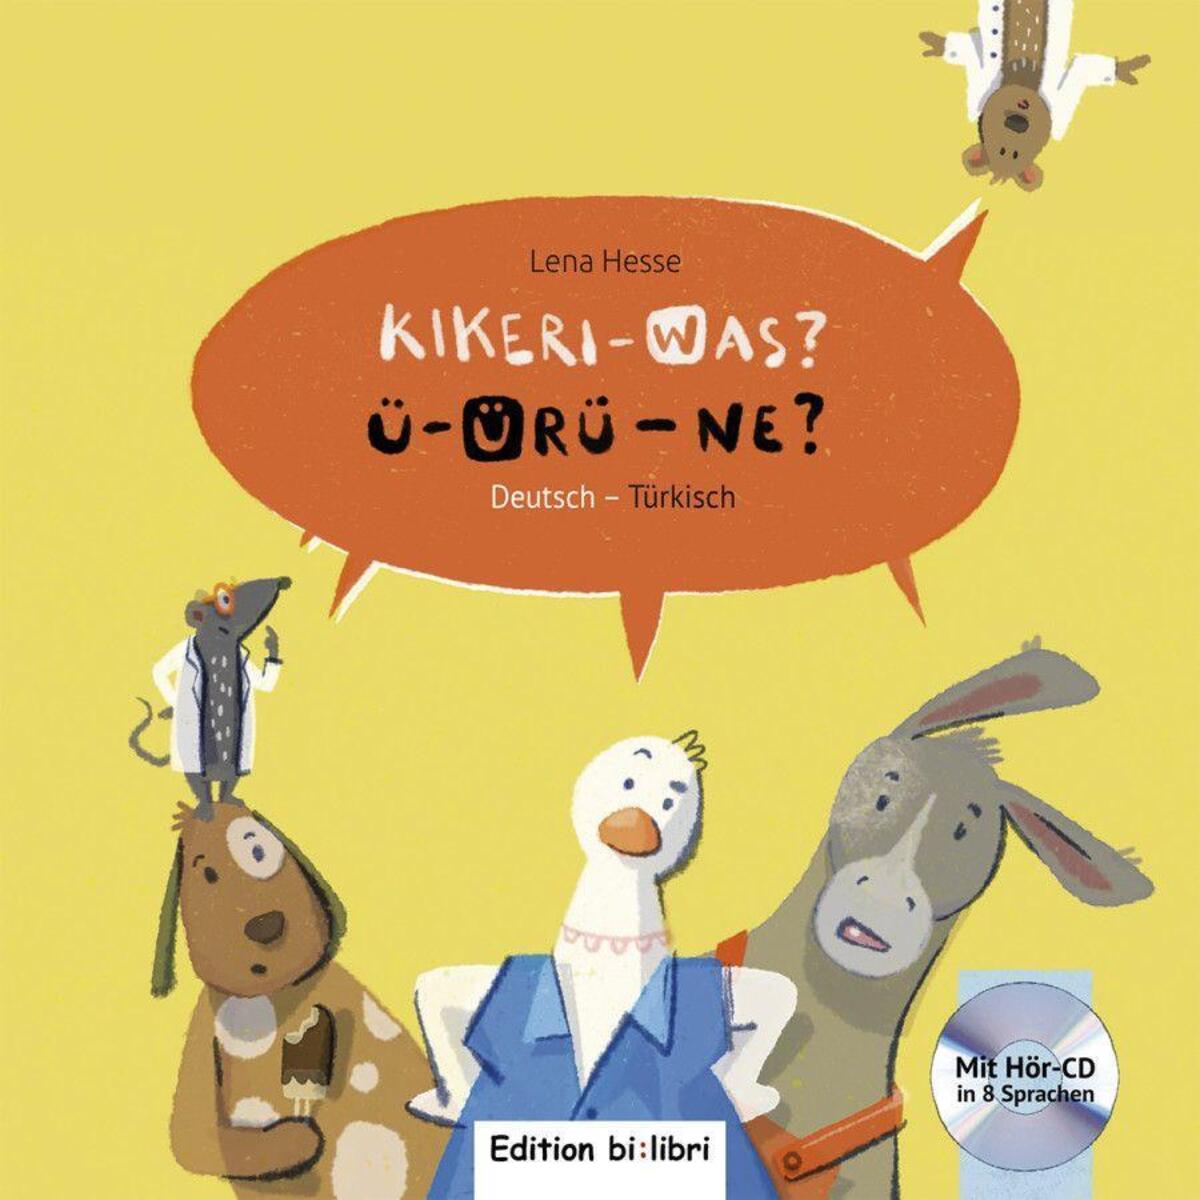 Kikeri - was? Kinderbuch Deutsch-Türkisch mit Audio-CD in acht Sprachen von Hueber Verlag GmbH